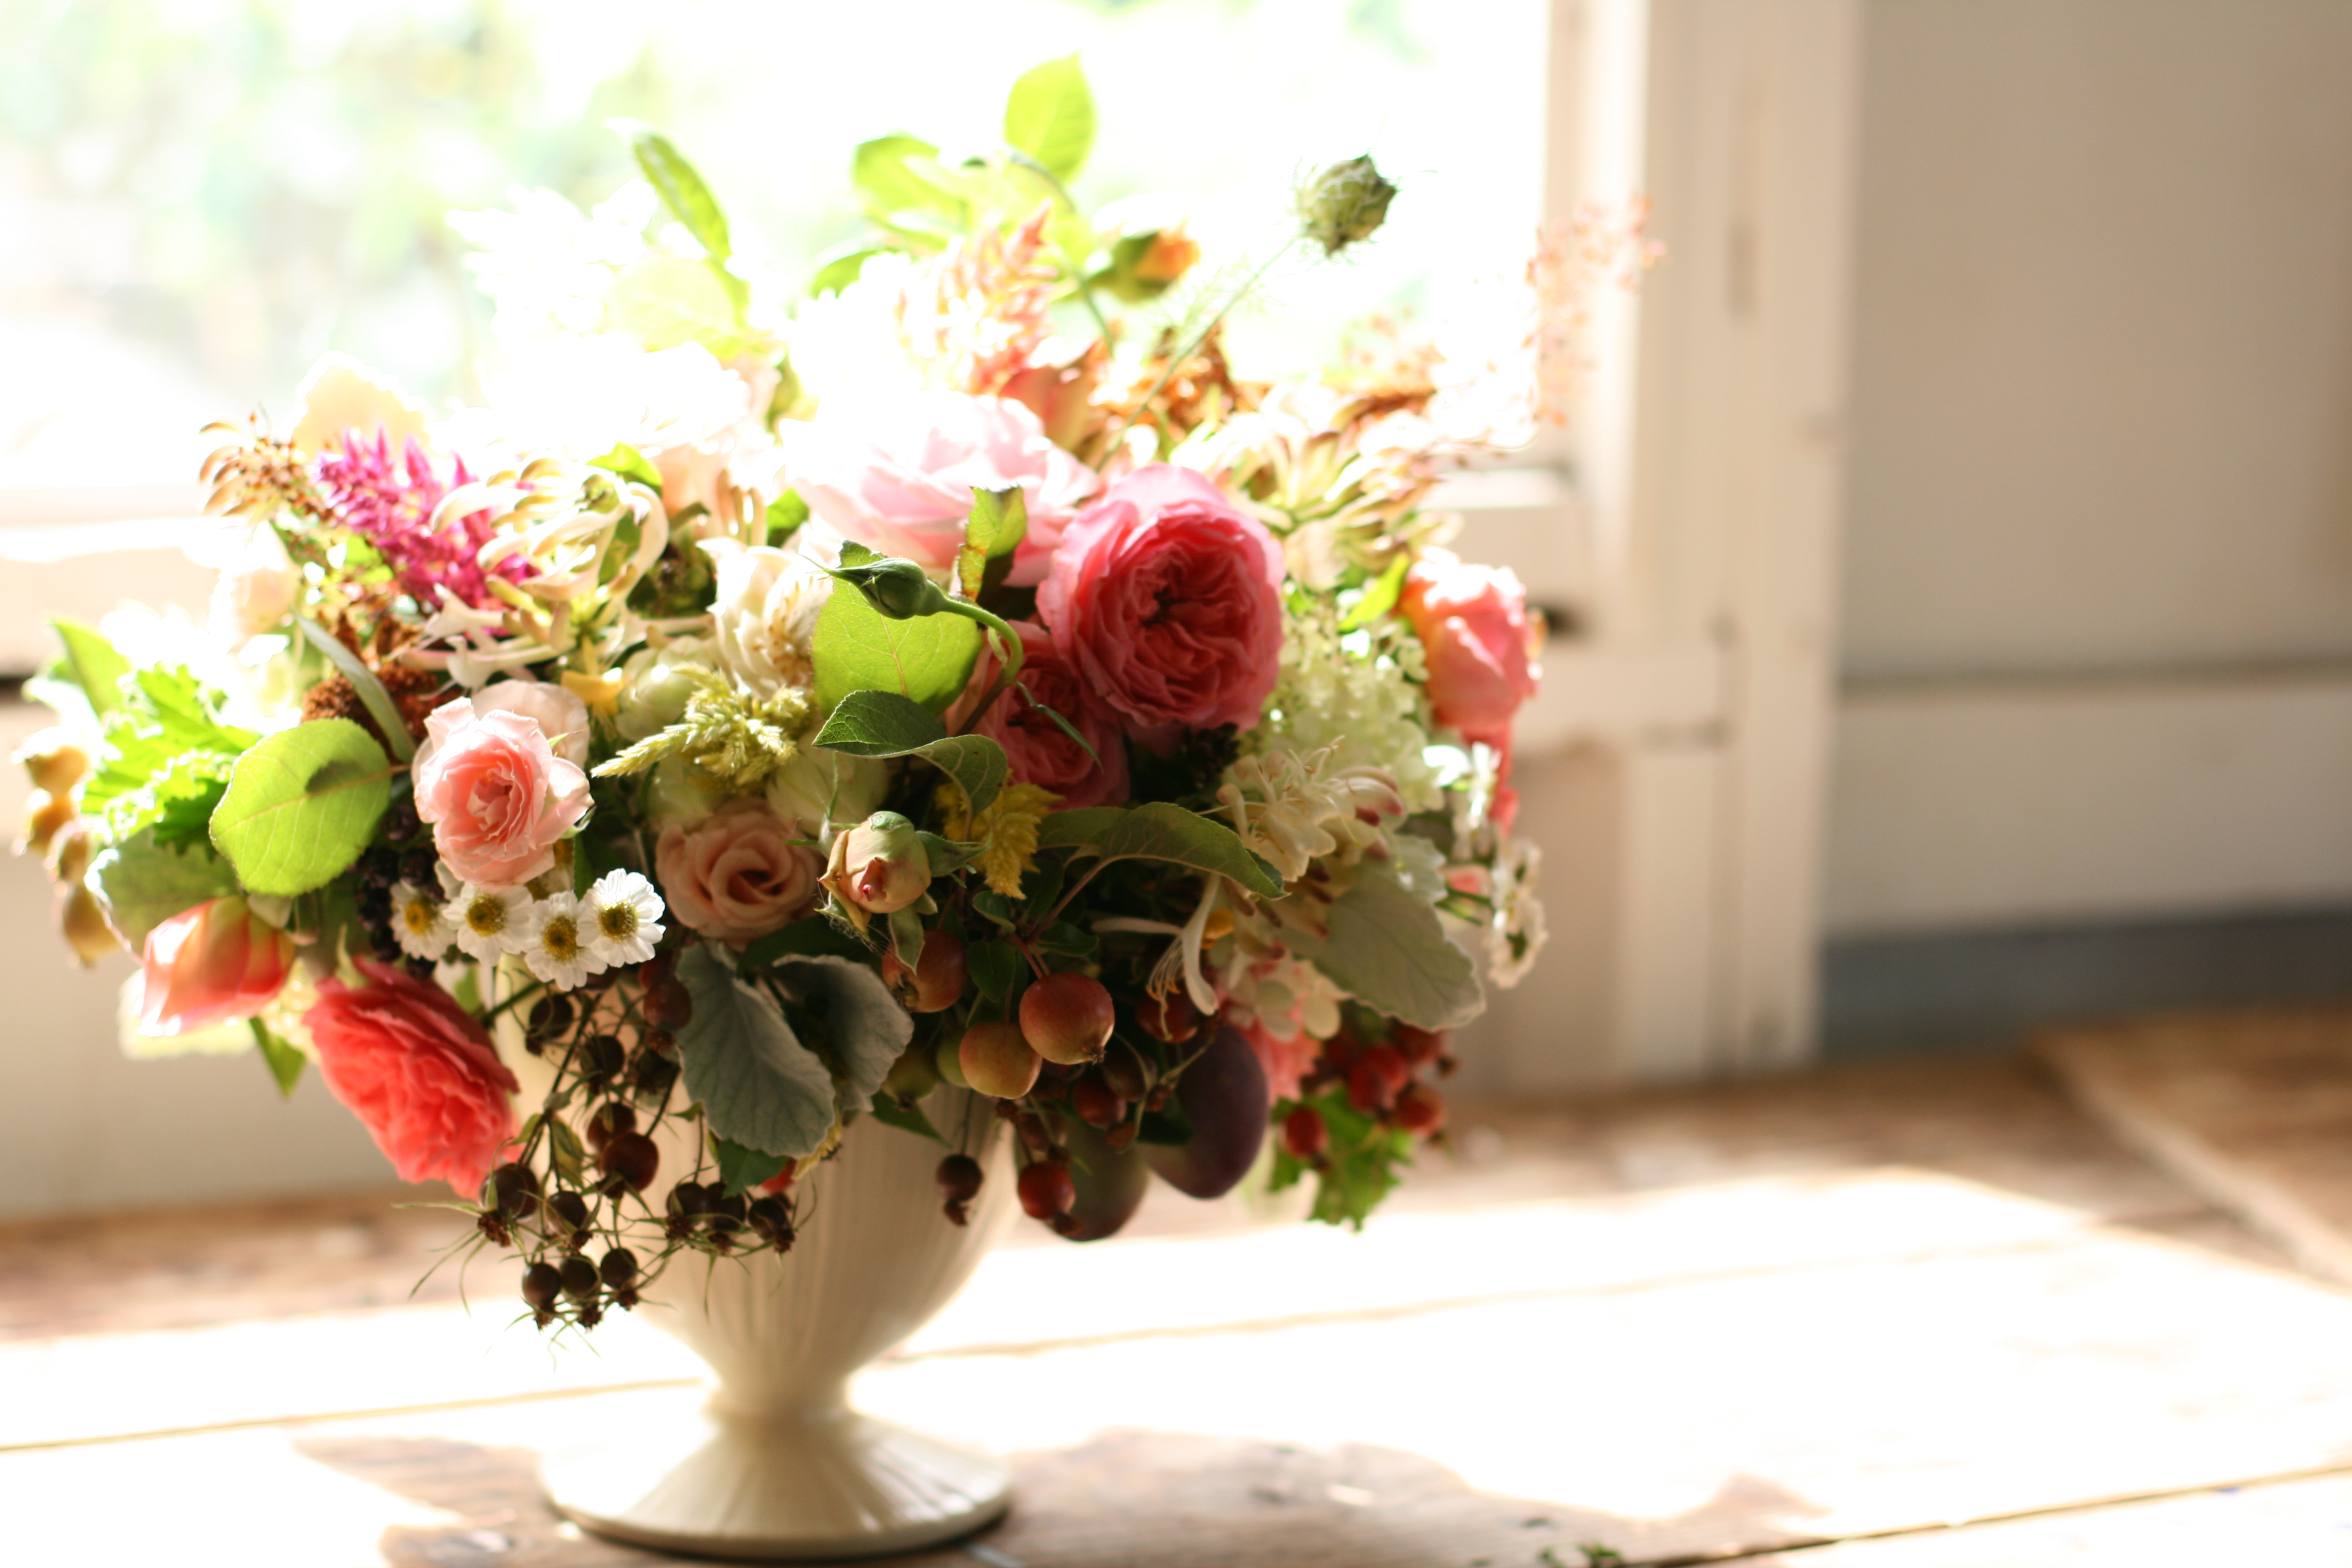 Floret. Seasonal Summer Floral Arrangements. Small Tabletop Floral Arrangements. Summer Seasonal Flower Centerpieces.